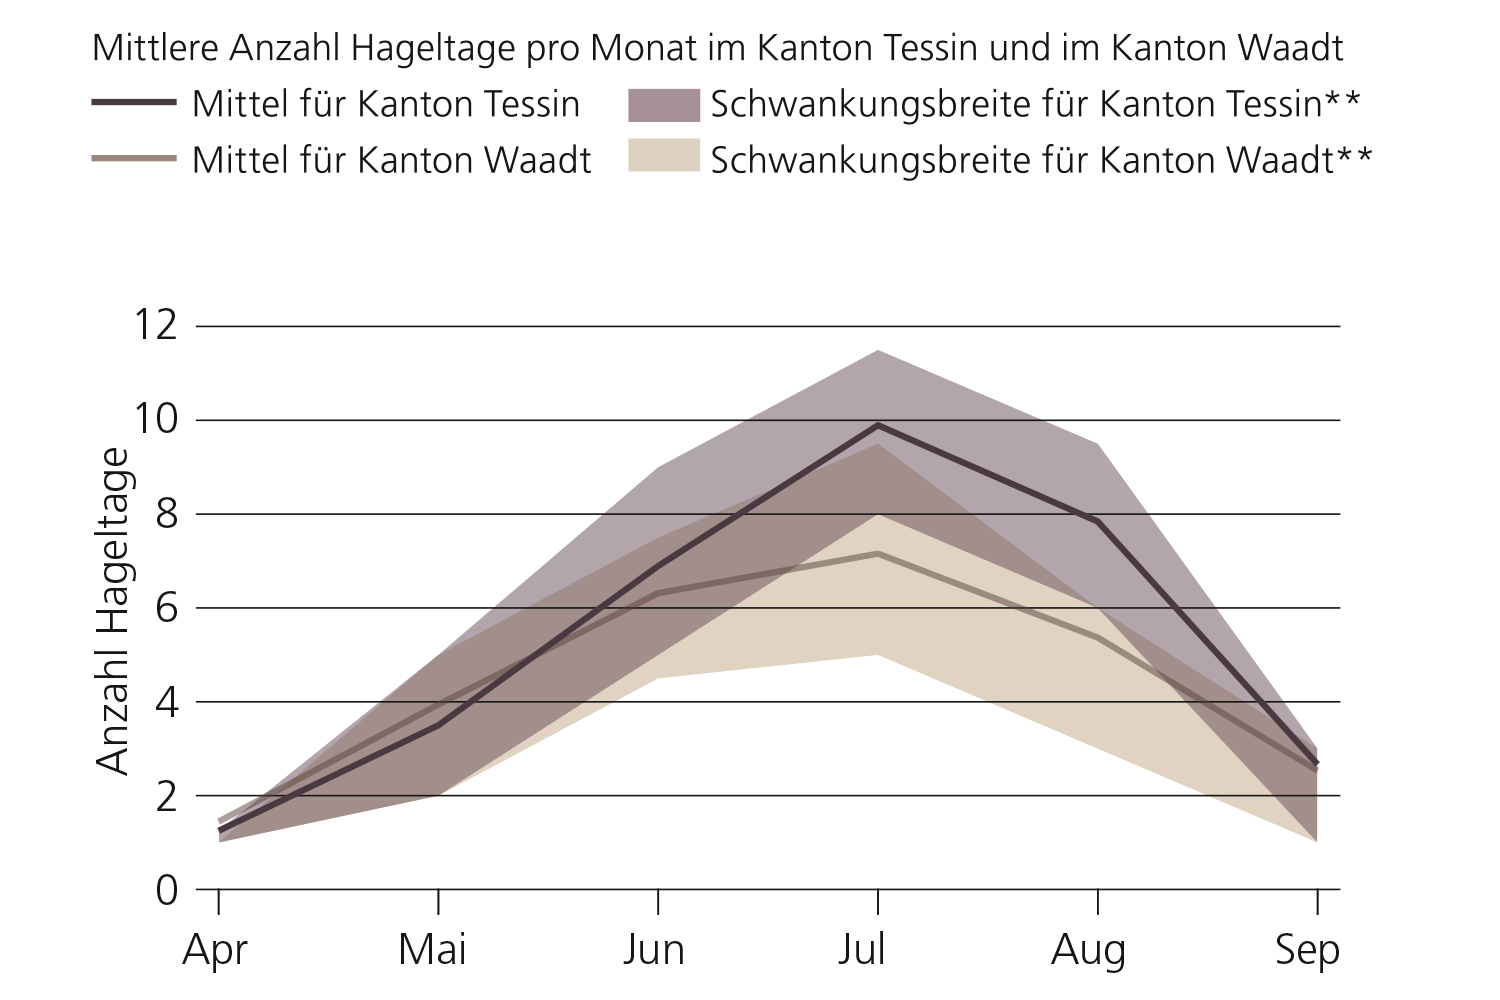 Mittlere Anzahl Hageltage pro Monat im Kanton Tessin und im Kanton Waadt. Das Mittel und die Schwankungsbreite zeigt den Jahresgang der Hageltage.